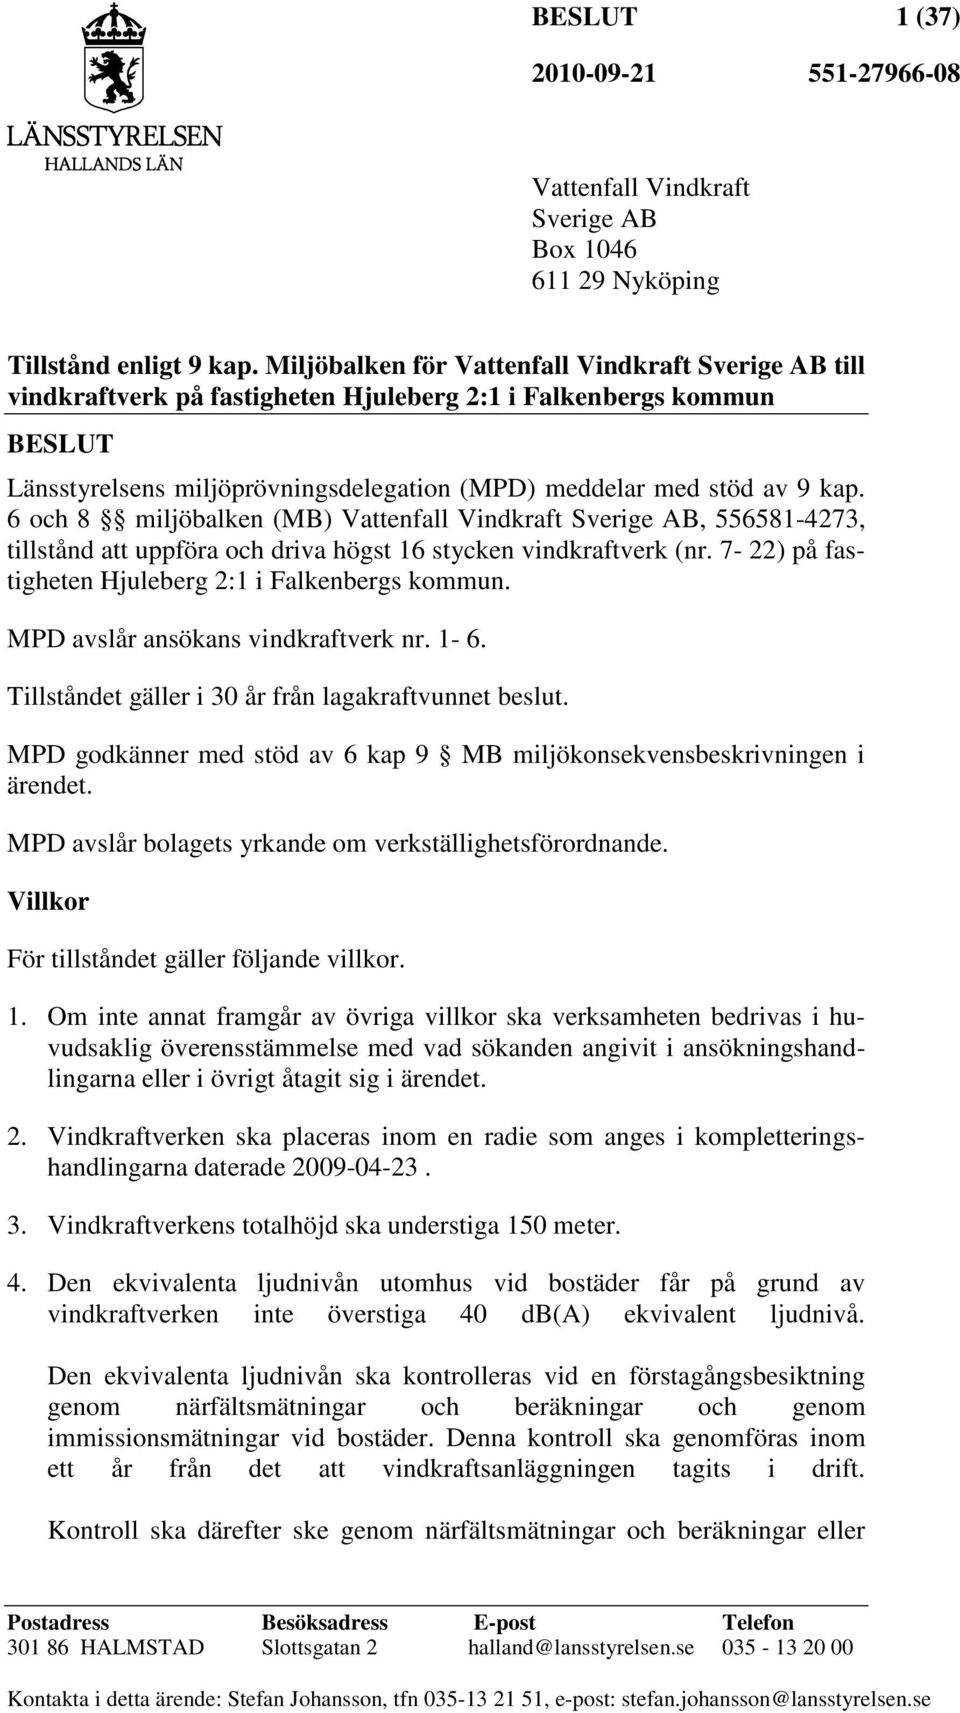 6 och 8 miljöbalken (MB) Vattenfall Vindkraft Sverige AB, 556581-4273, tillstånd att uppföra och driva högst 16 stycken vindkraftverk (nr. 7-22) på fastigheten Hjuleberg 2:1 i Falkenbergs kommun.